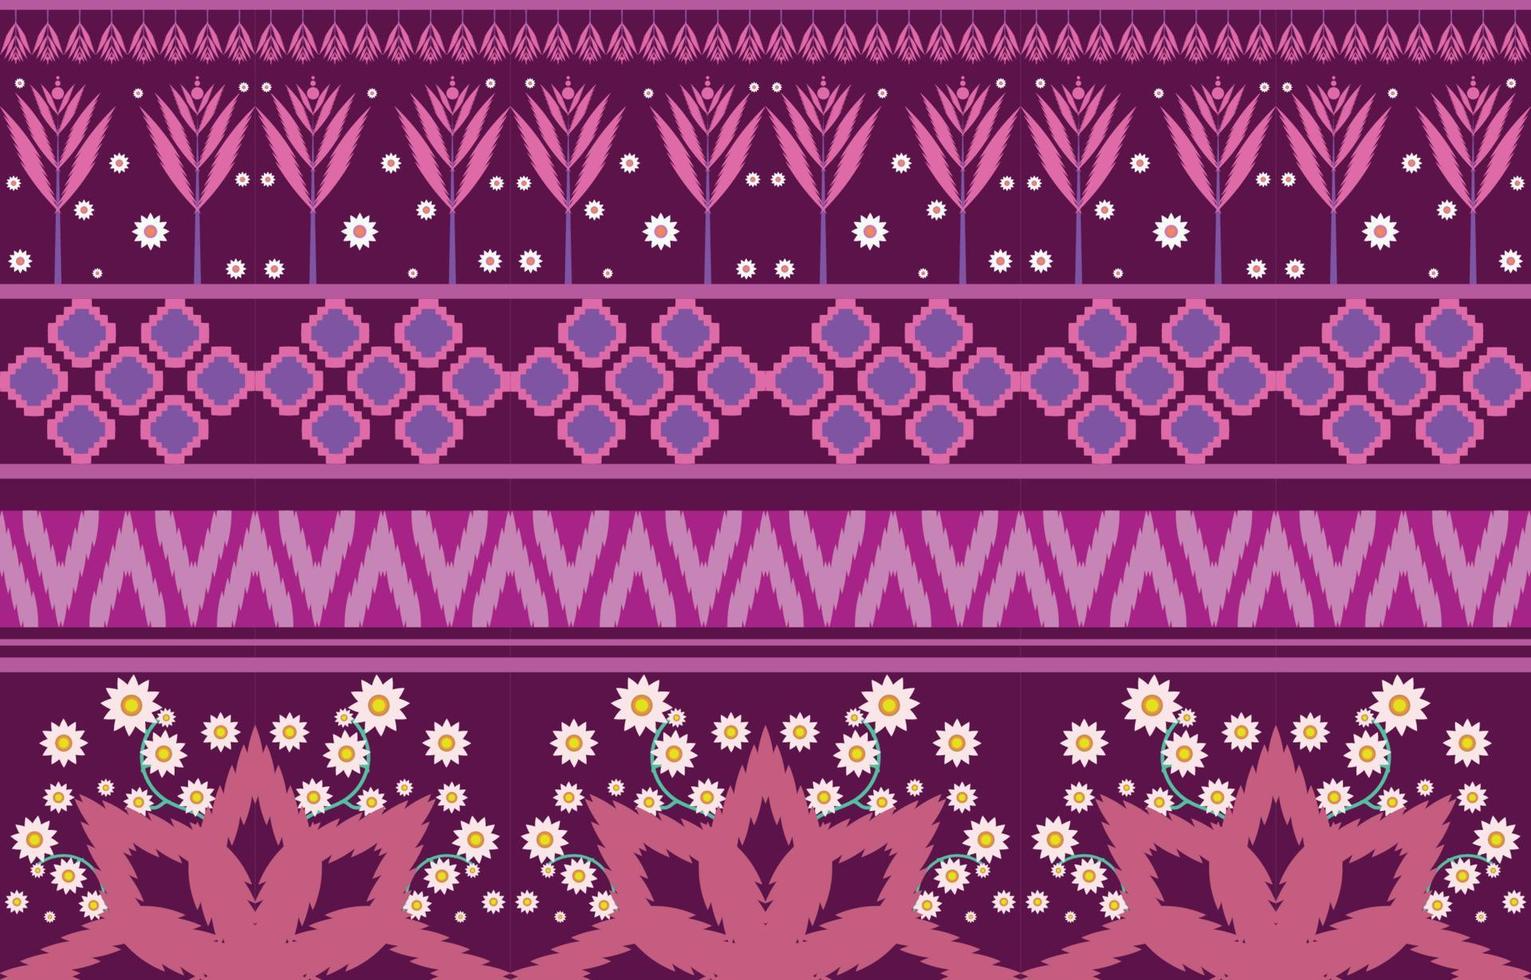 tela colorida de flores, patrón étnico geométrico en el diseño de fondo oriental tradicional para alfombra, papel pintado, ropa, envoltura, batik, estilo de bordado de ilustración vectorial. vector